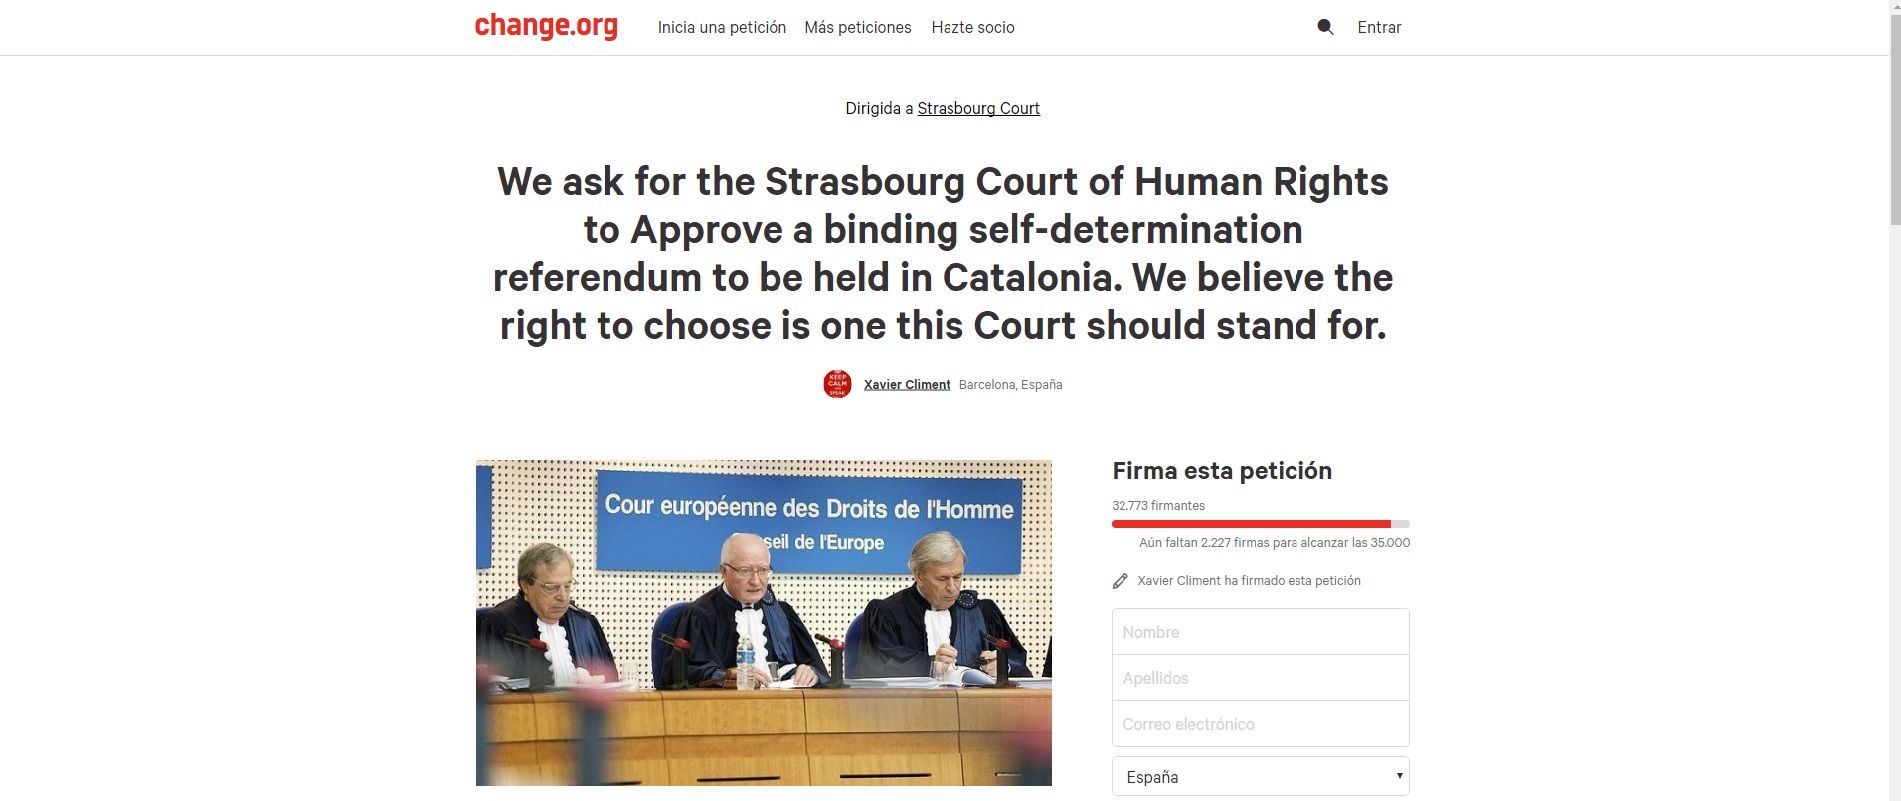 Una iniciativa demanarà al Tribunal de Drets Humans autoritzar el referèndum a Catalunya